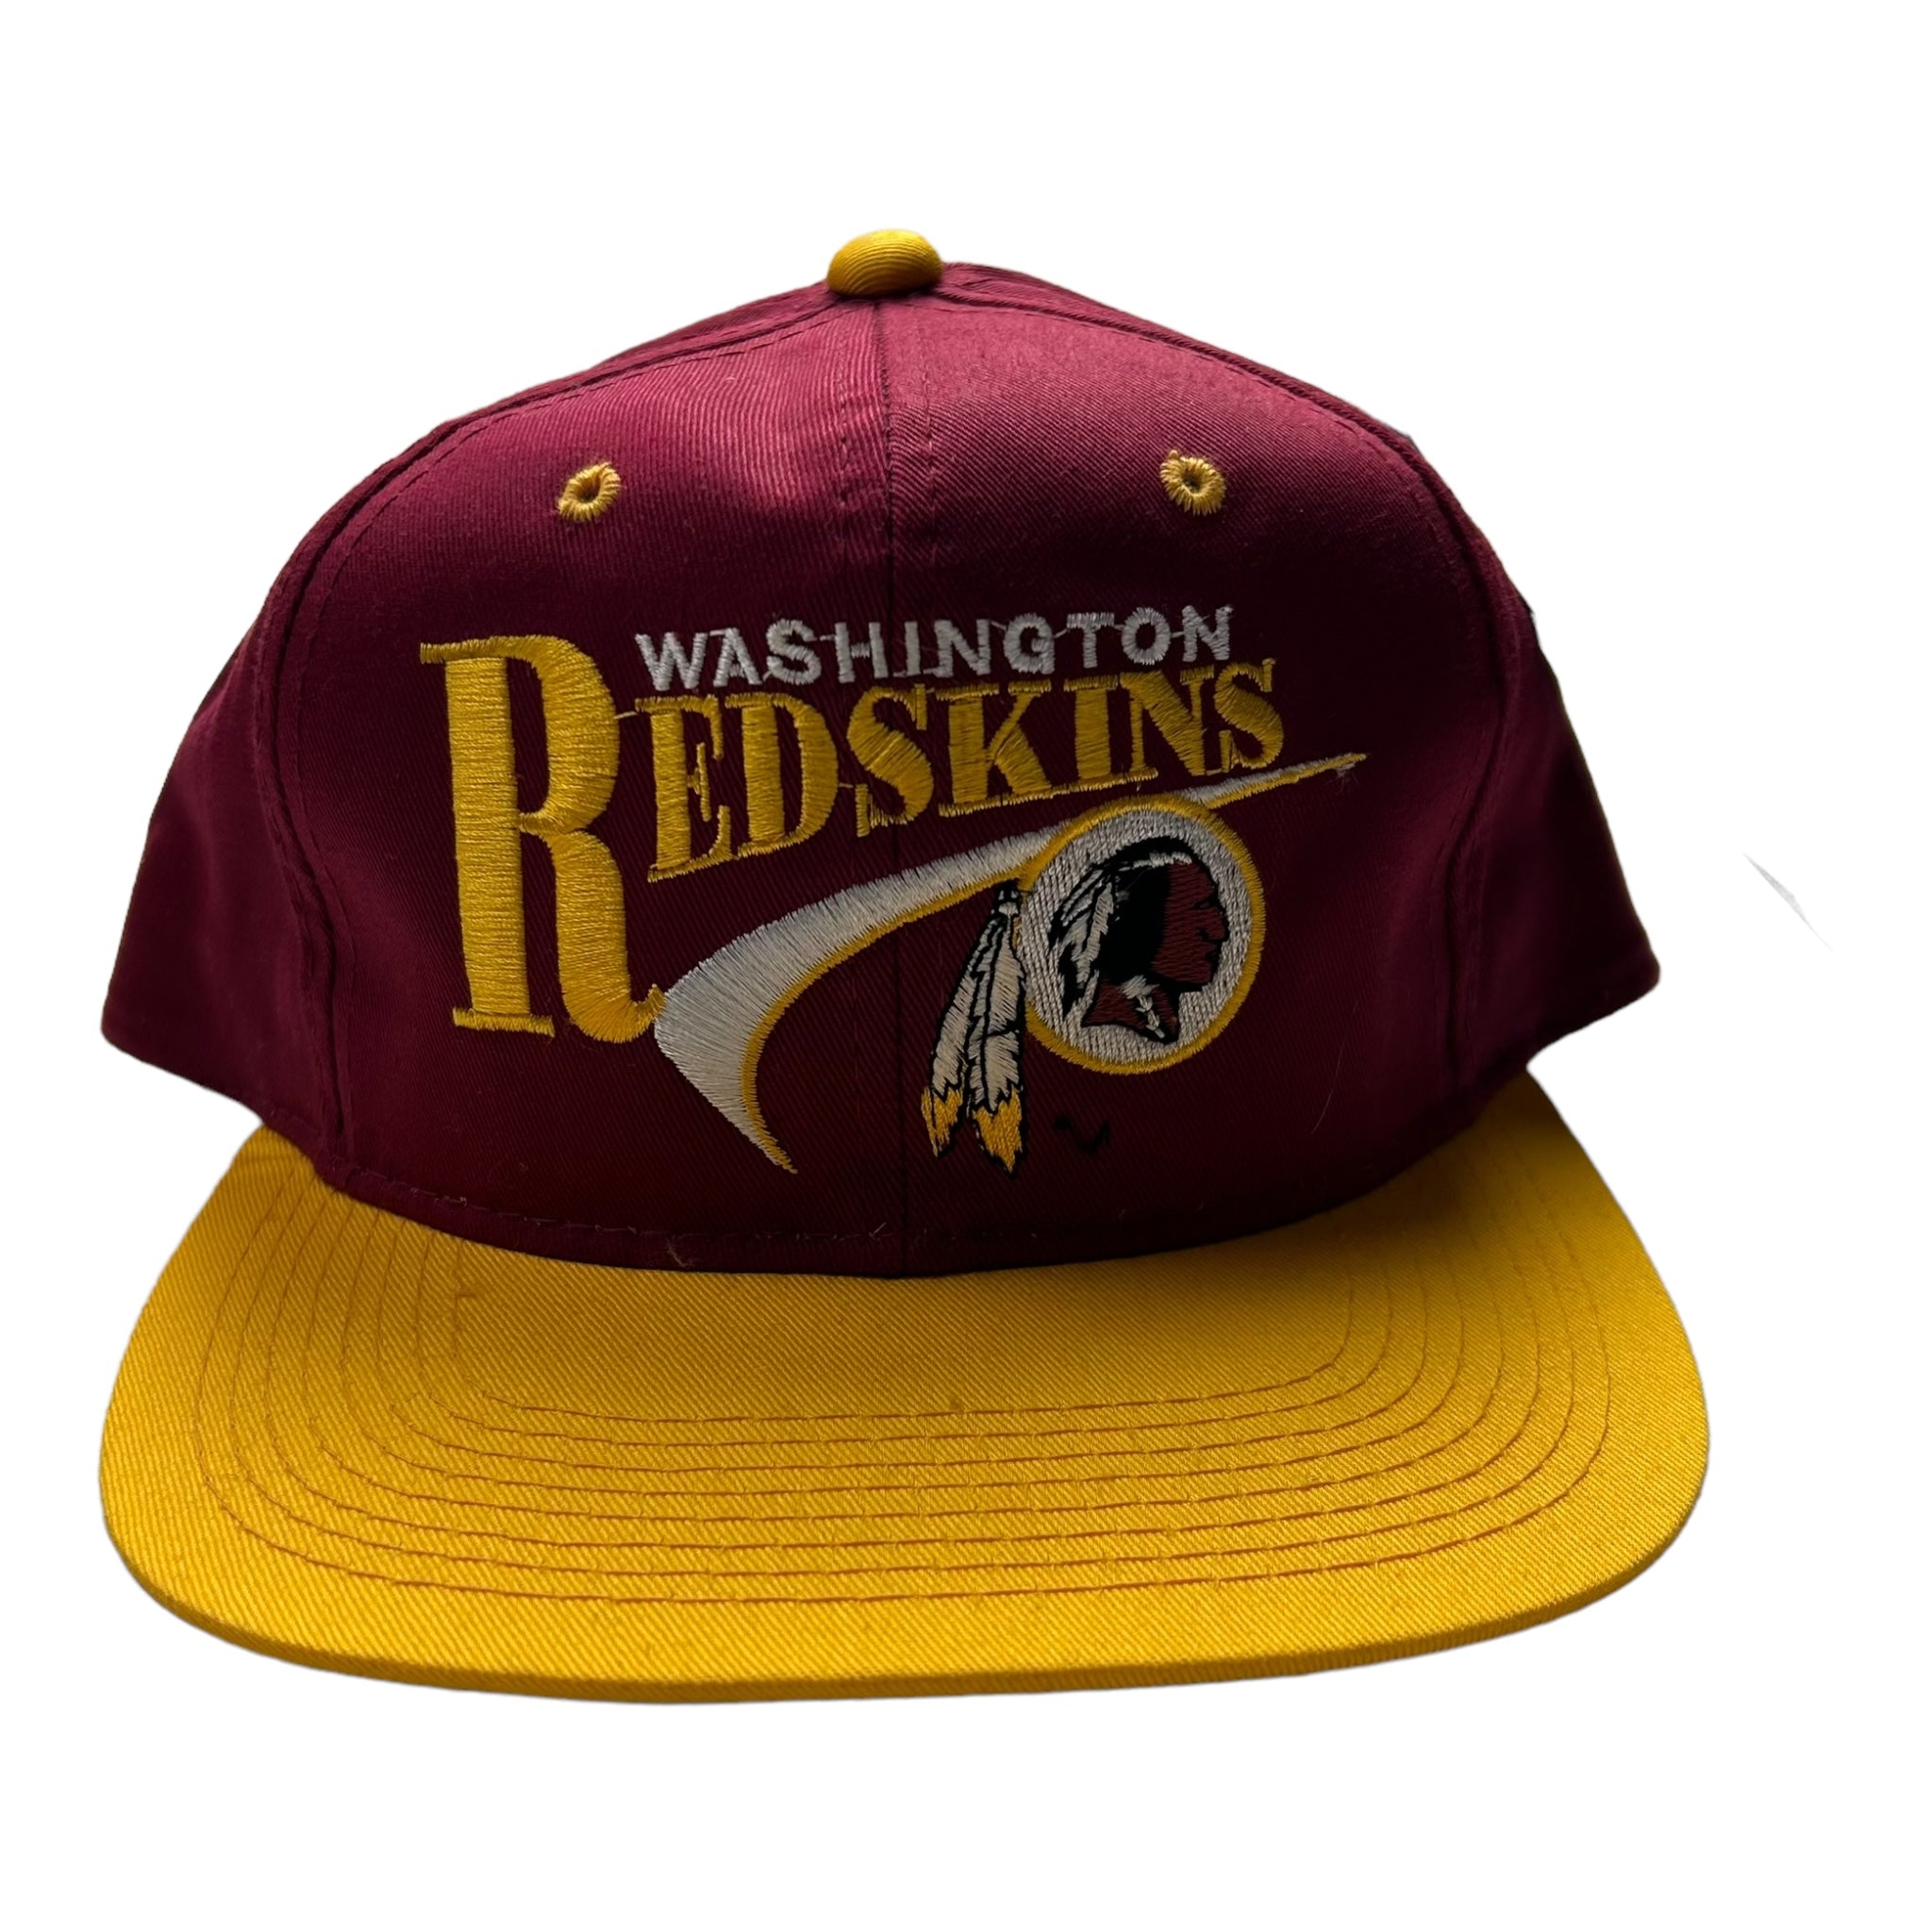 Vintage Washington Redskins NFL Hat